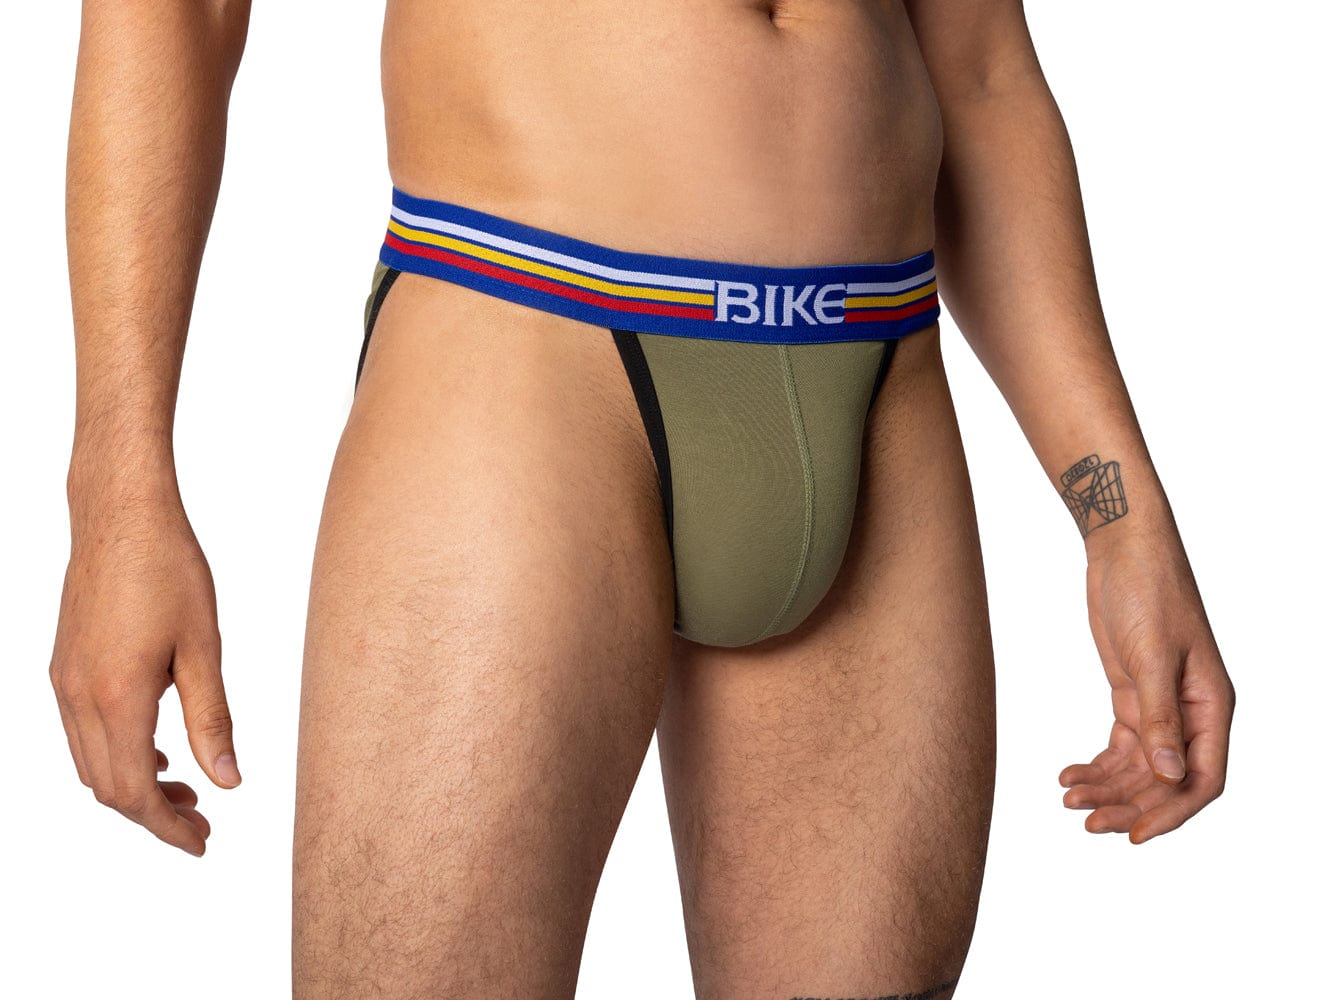 Olive Bike Athletic underwear jock briefs